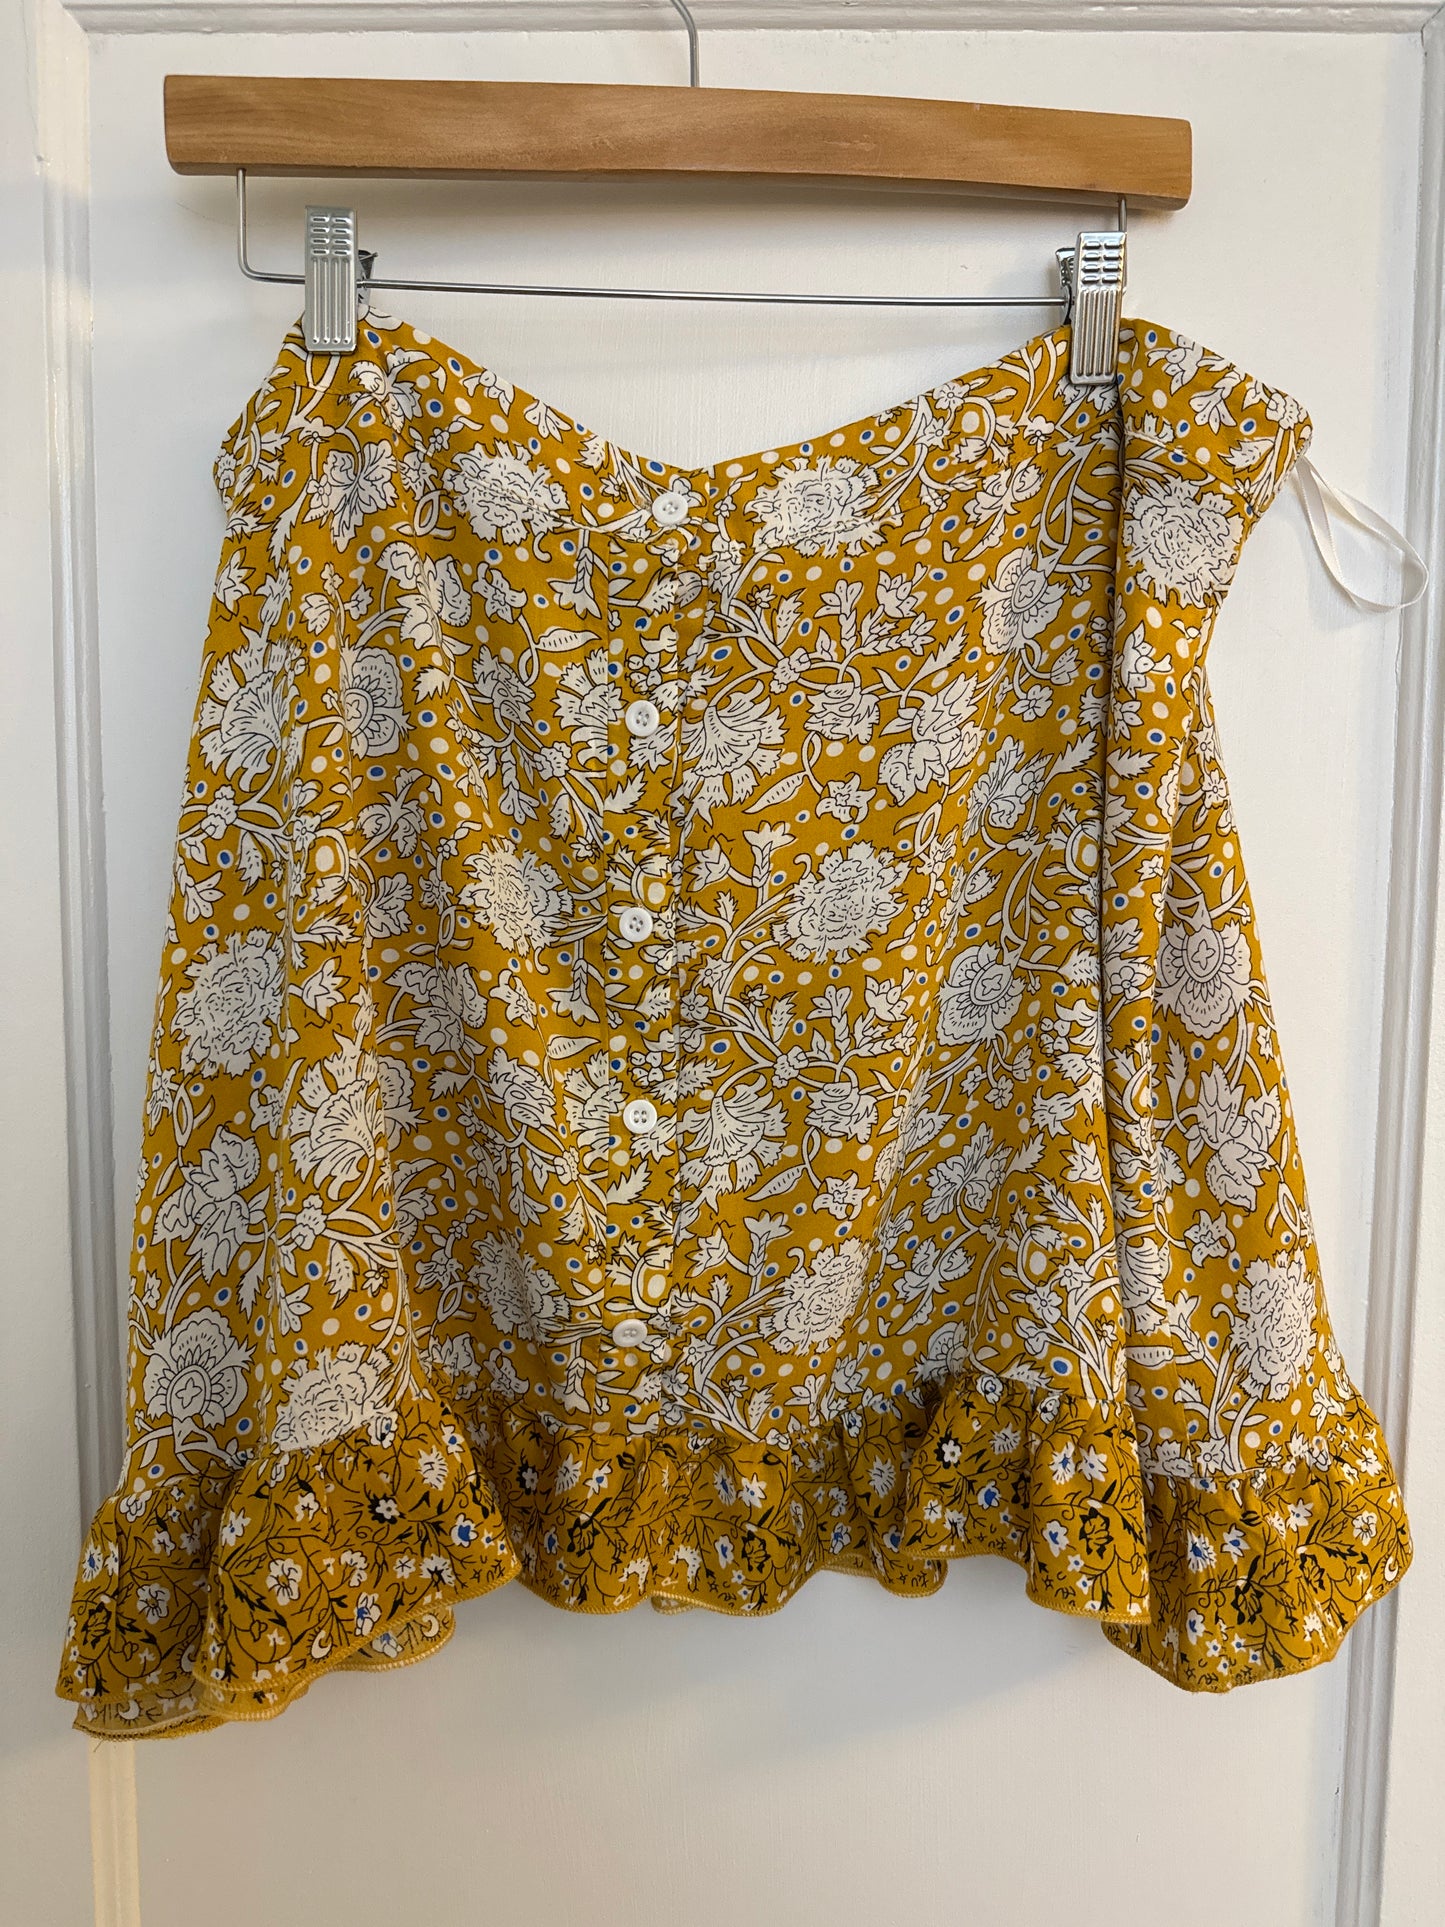 Amazon Yellow Patterned 2 Pc Skirt Set, Women's Size 3XL Runs Very Small